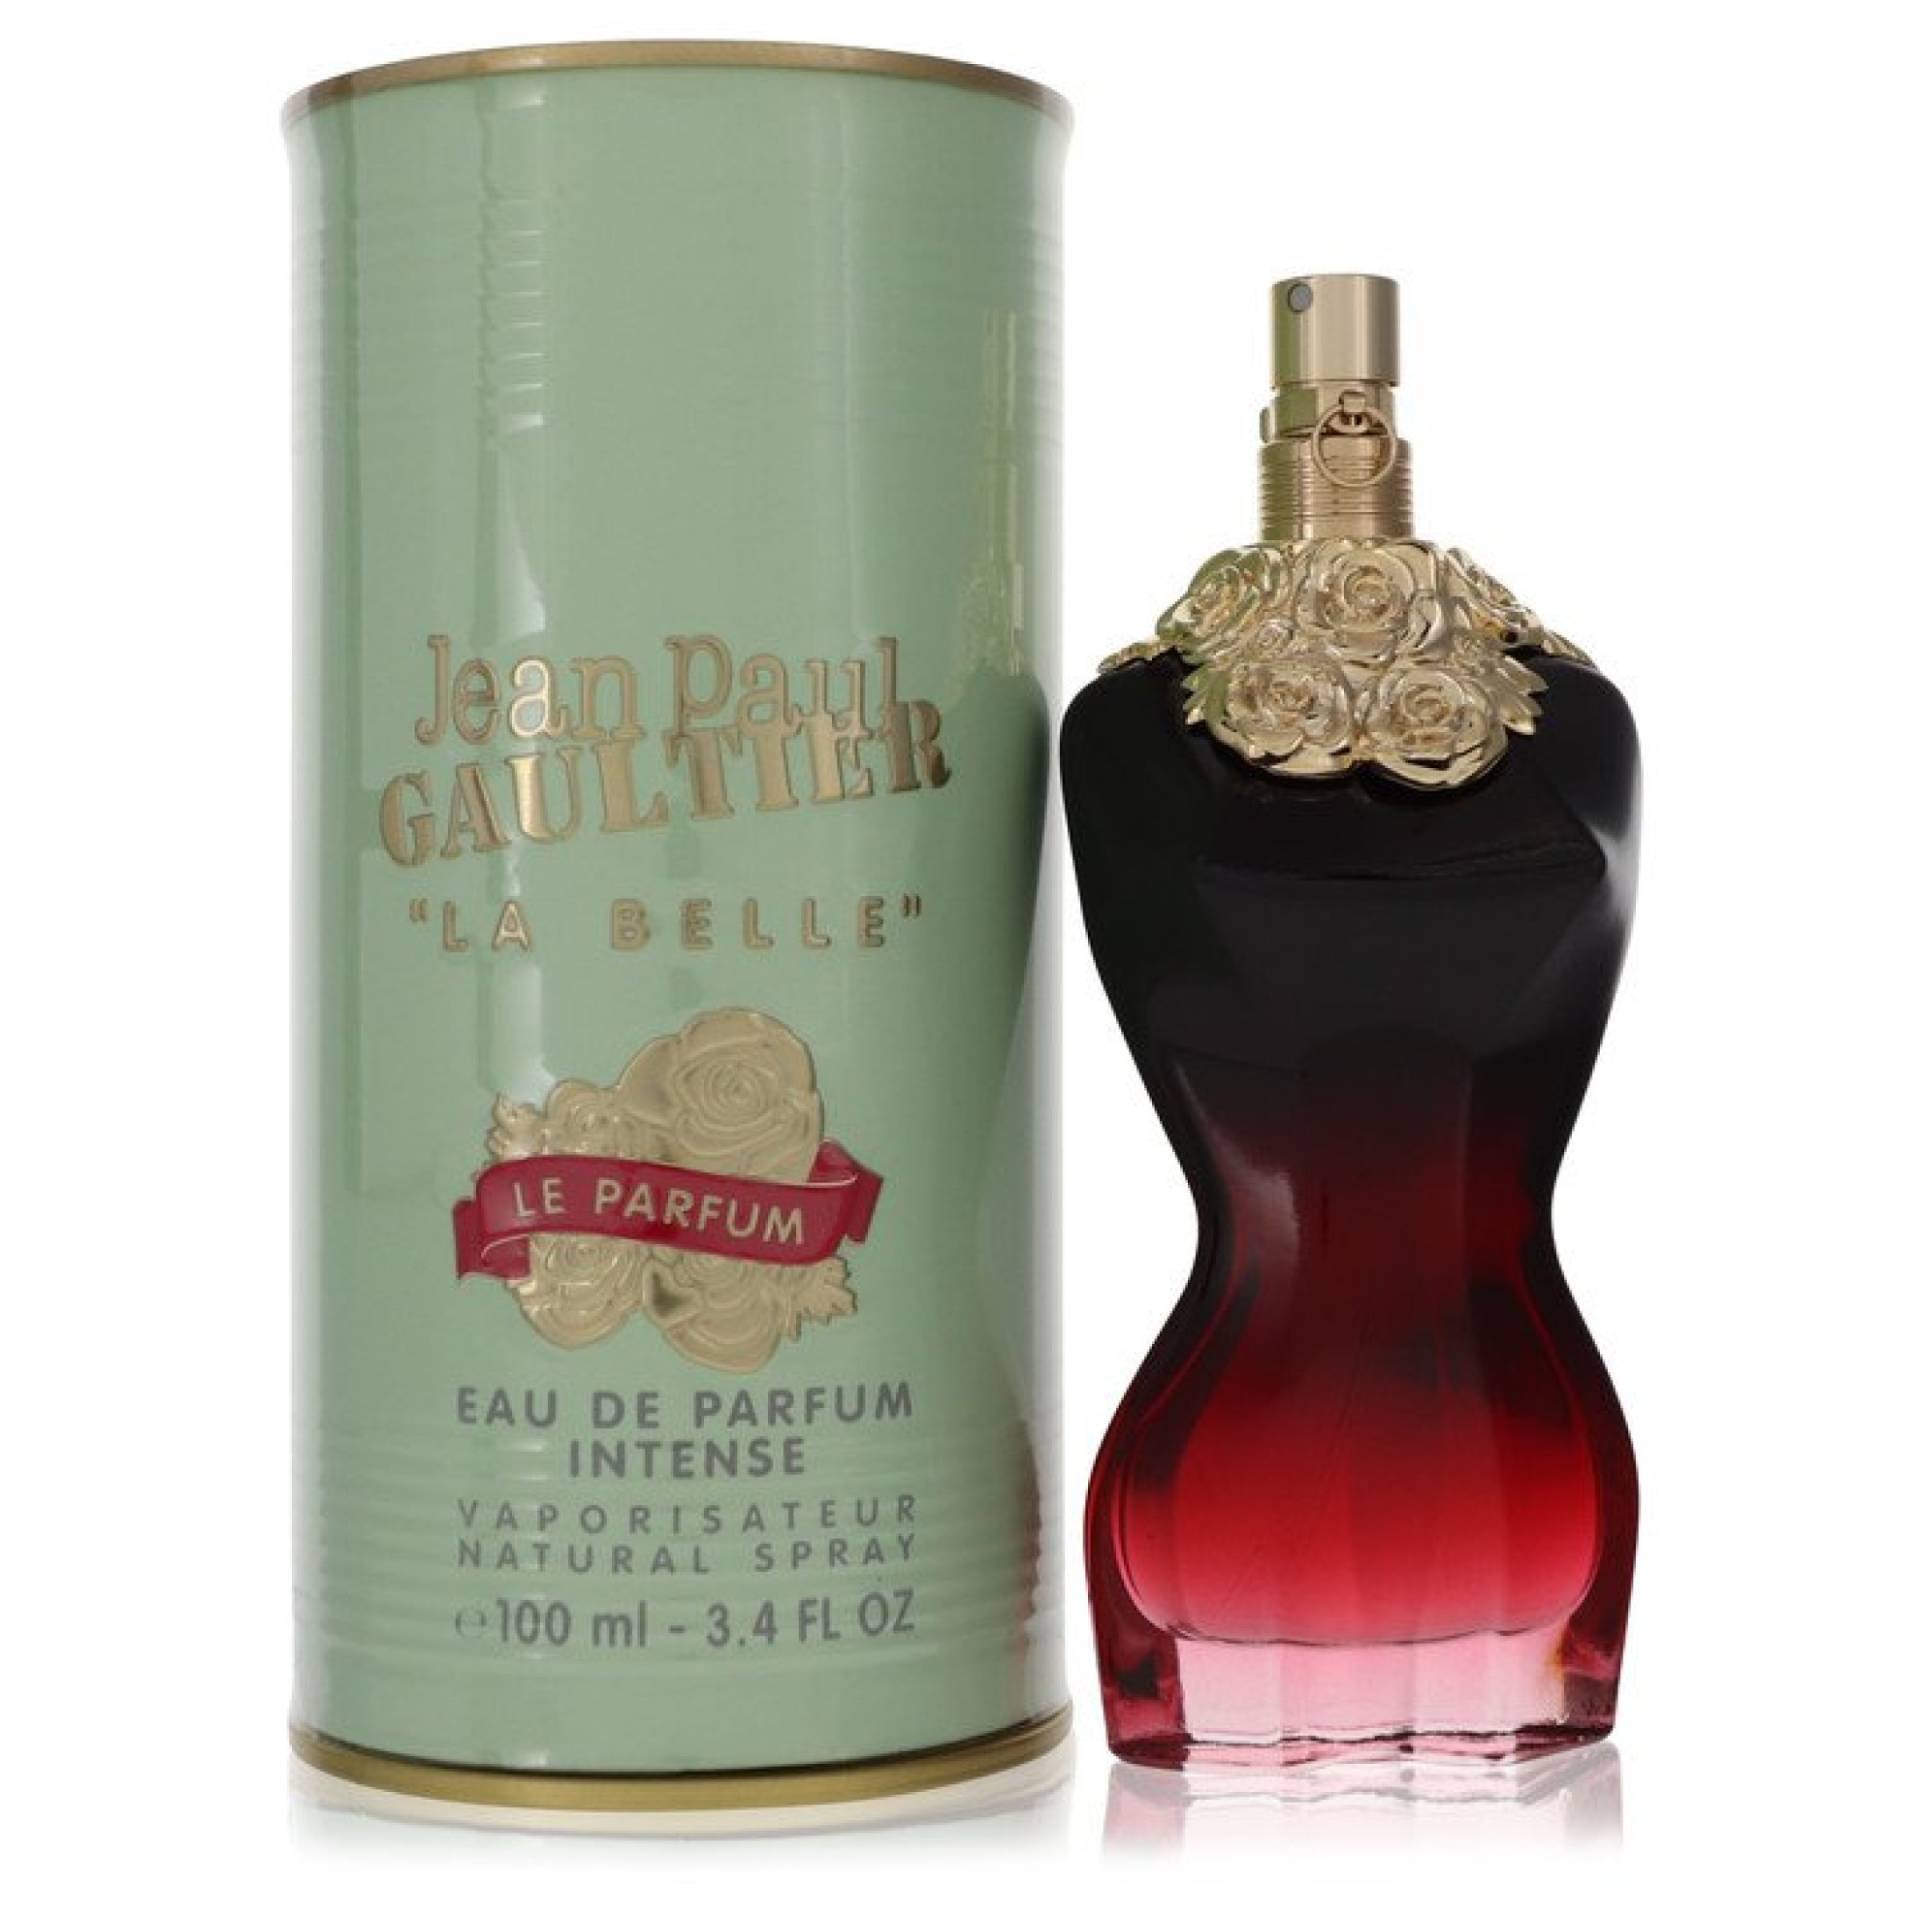 Jean Paul Gaultier La Belle Le Parfum Eau De Parfum Intense Spray 100 ml von Jean Paul Gaultier